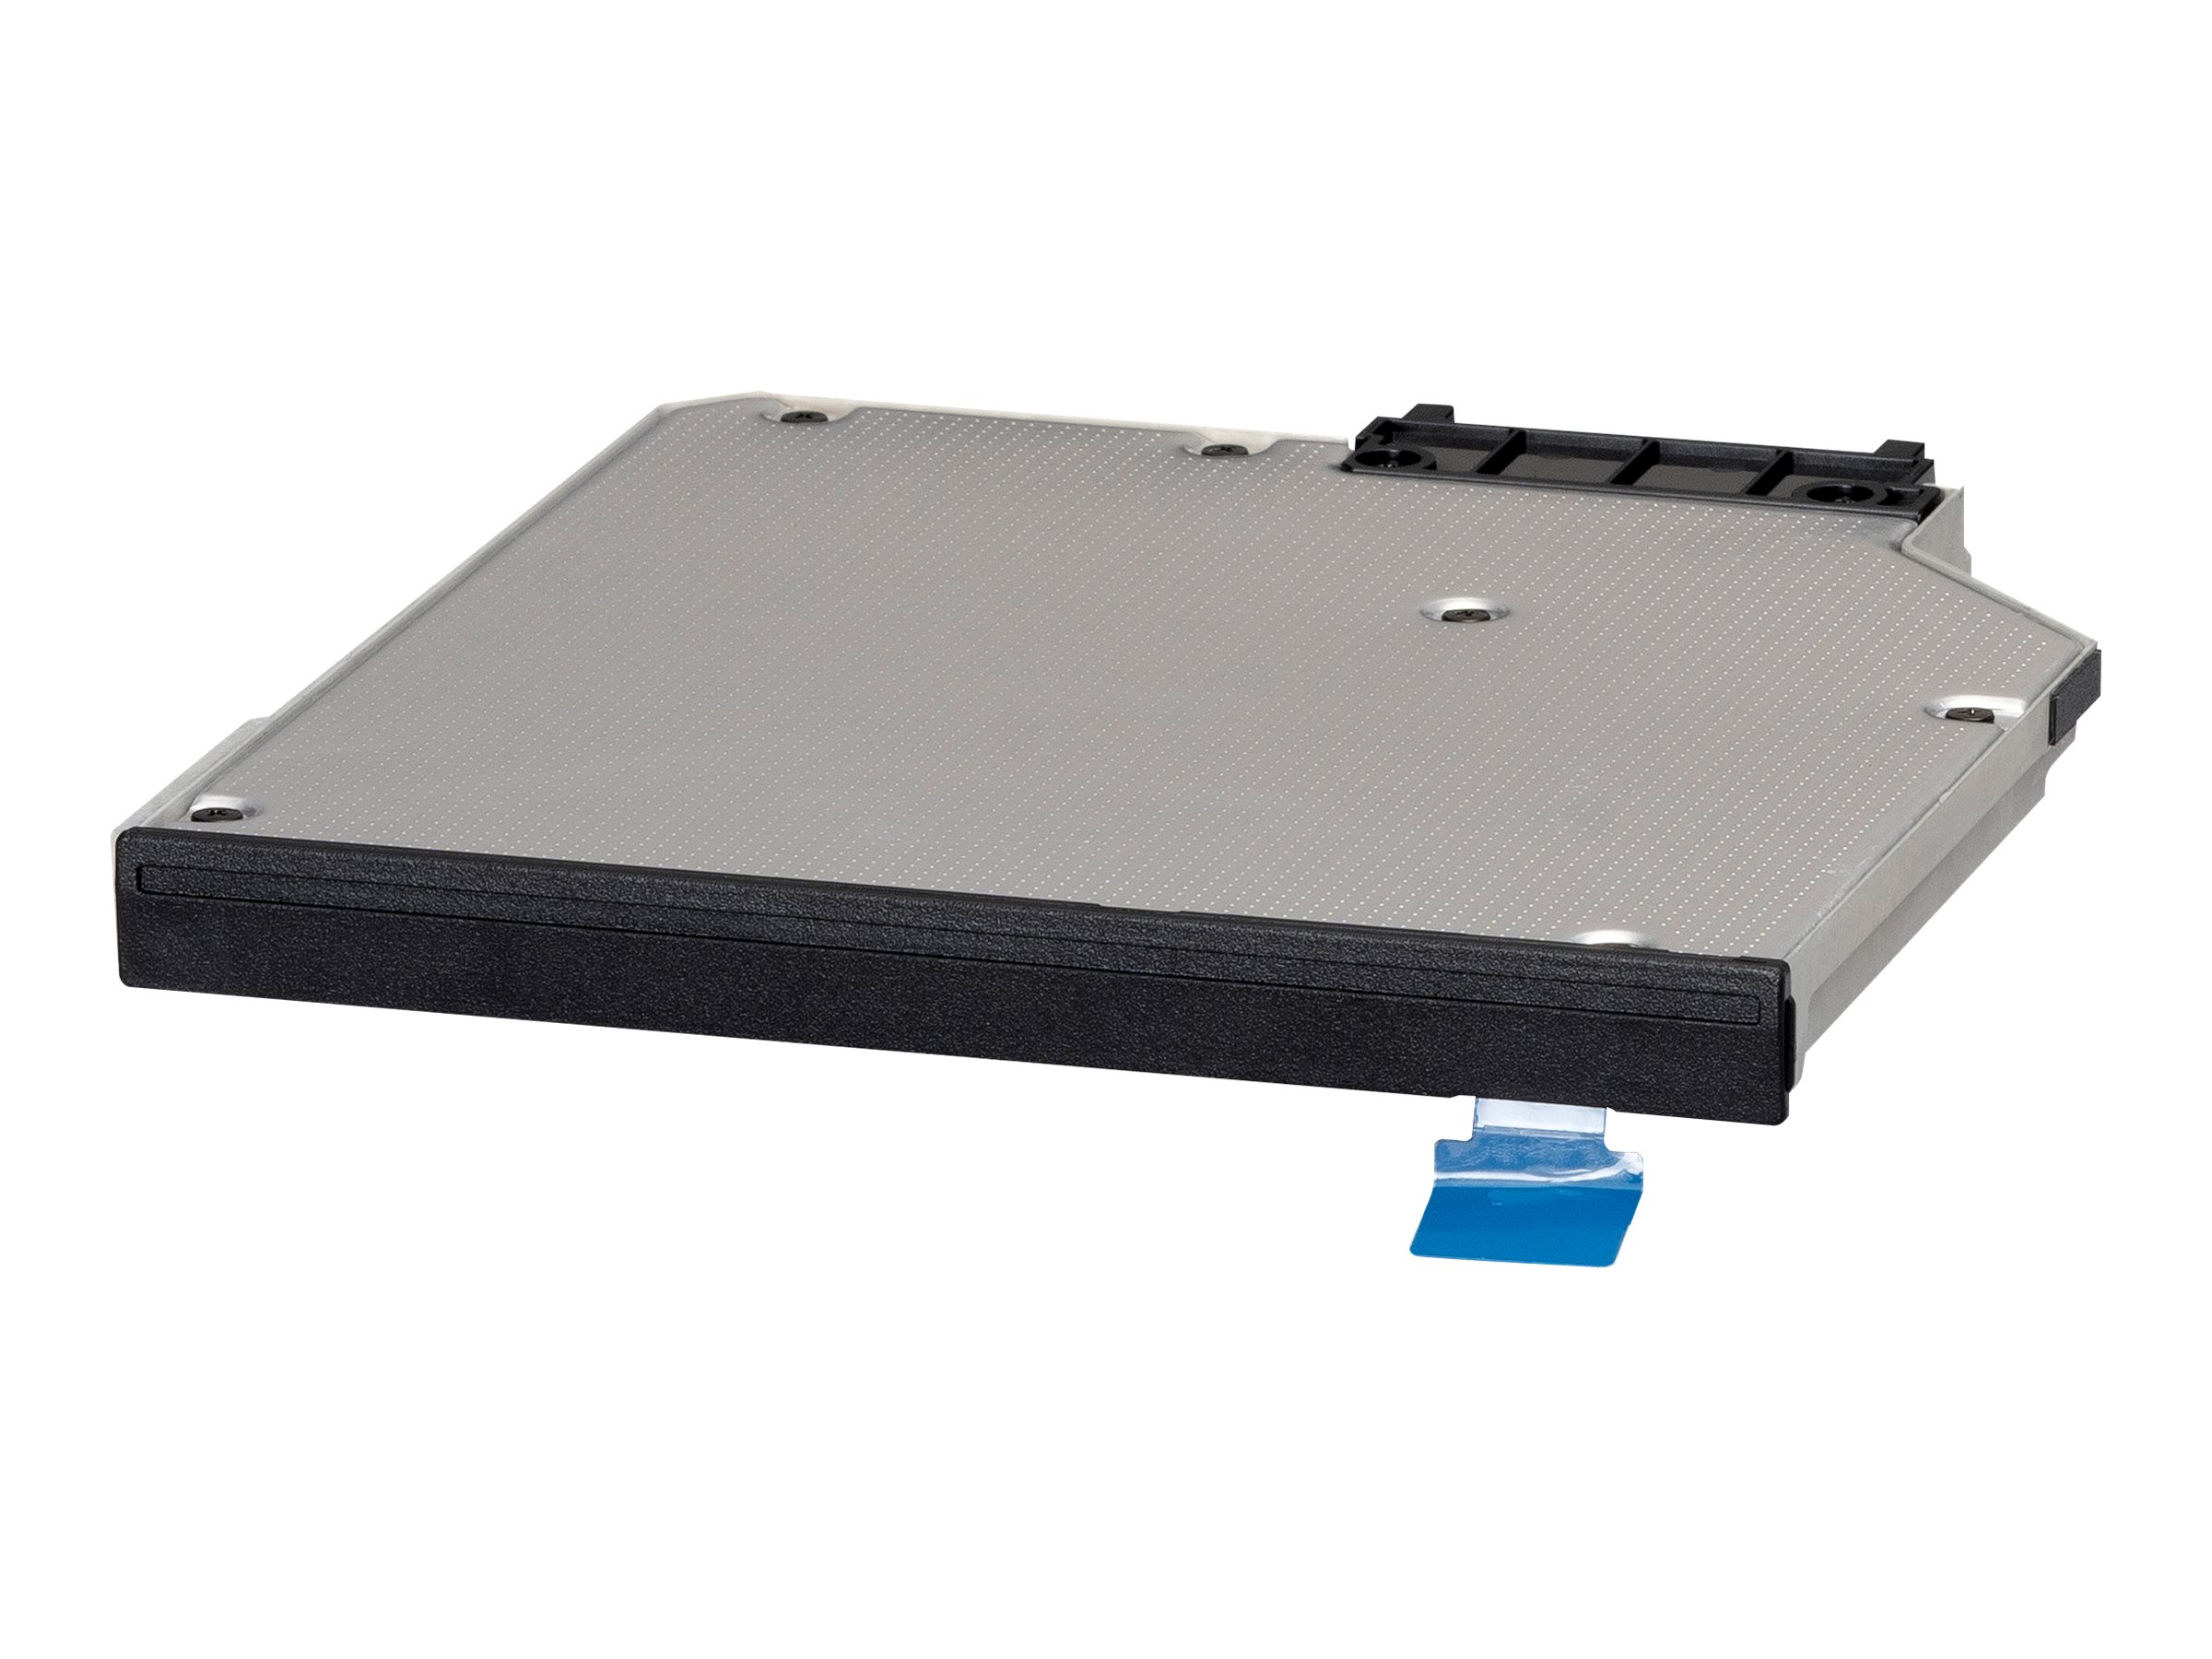 PANASONIC FZ-40 2ND SSD 512GB OPAL (FZ-V2S400T1U)